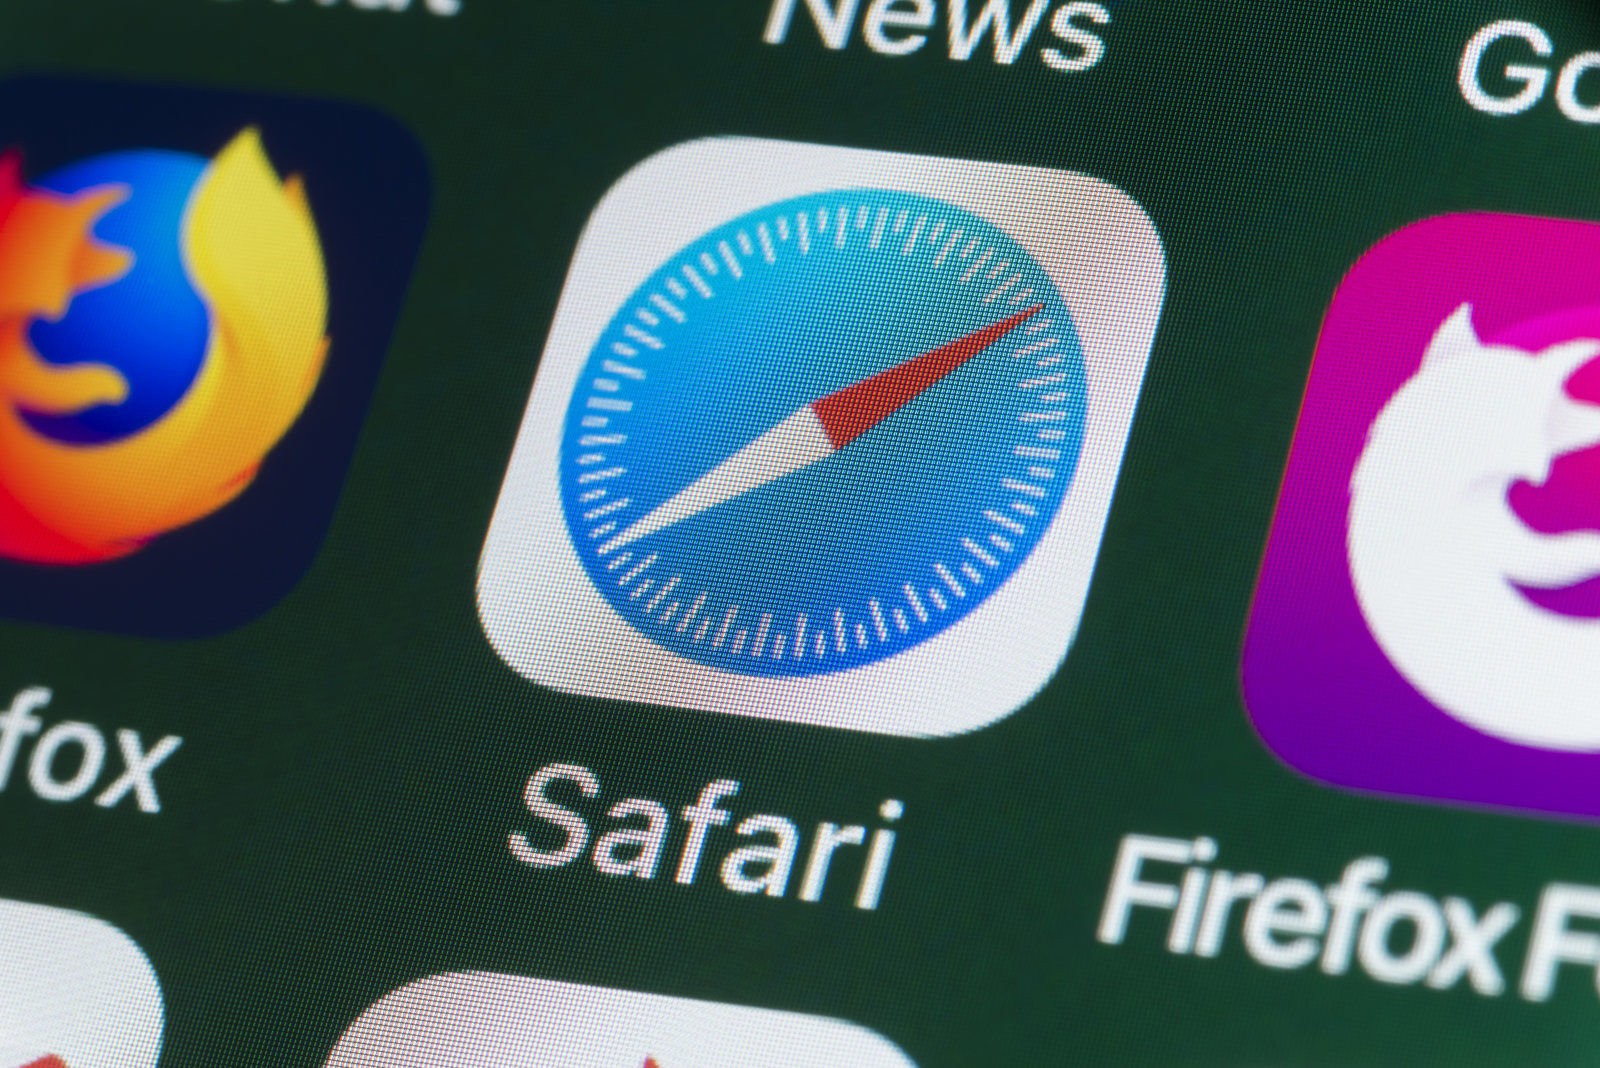 iMessage và Safari
khiến iOS dễ bị hack như thế nào?